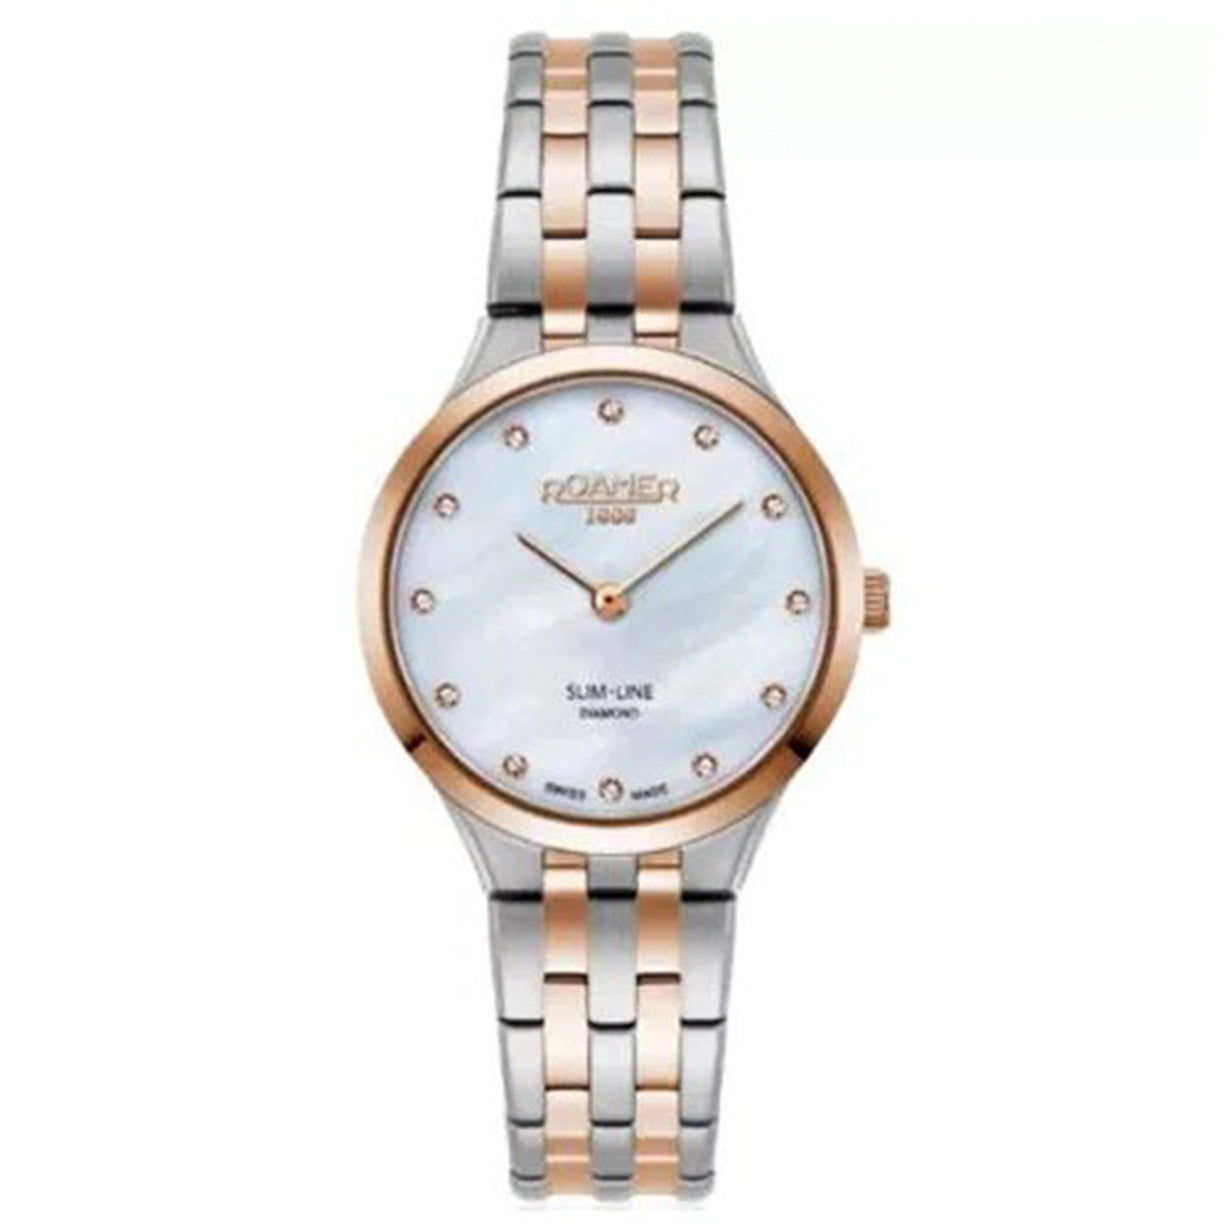 0 Roamer Limelight Watches • Official Retailer • Watchard.com